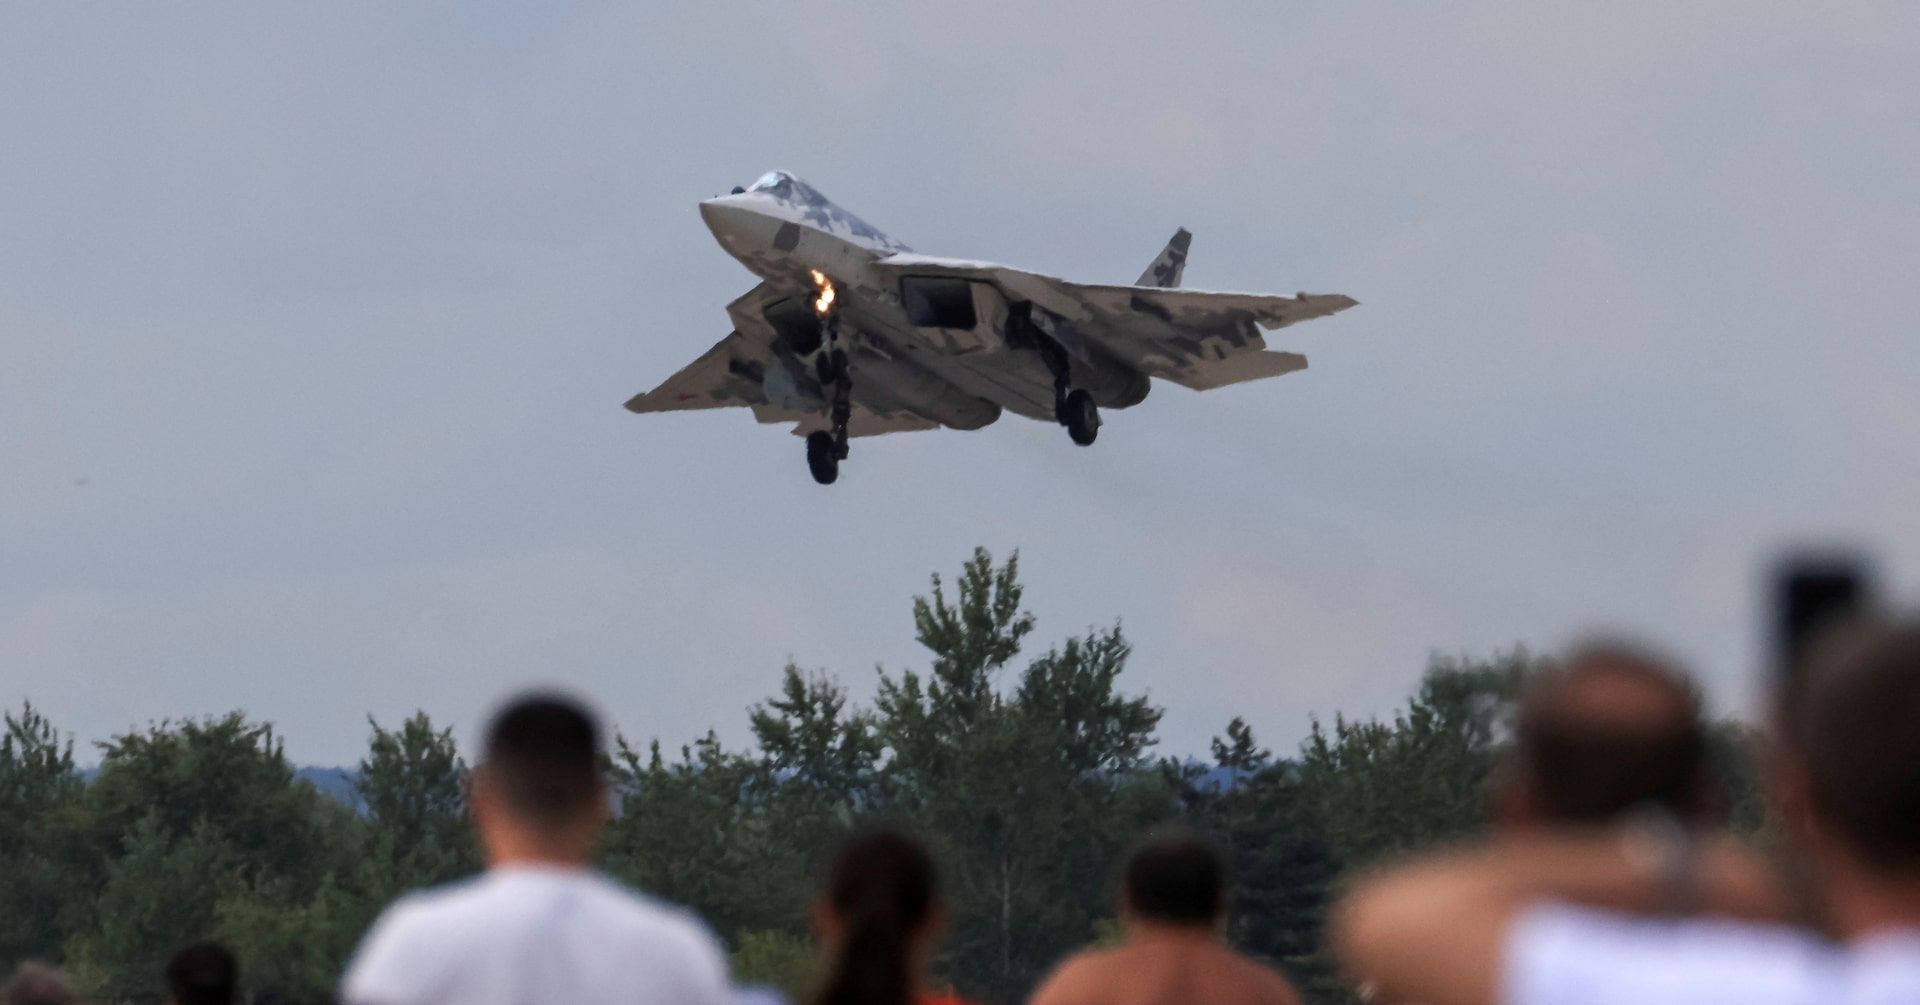 ロシア最新鋭戦闘機を初攻撃、ウクライナ発表 ロシア領内